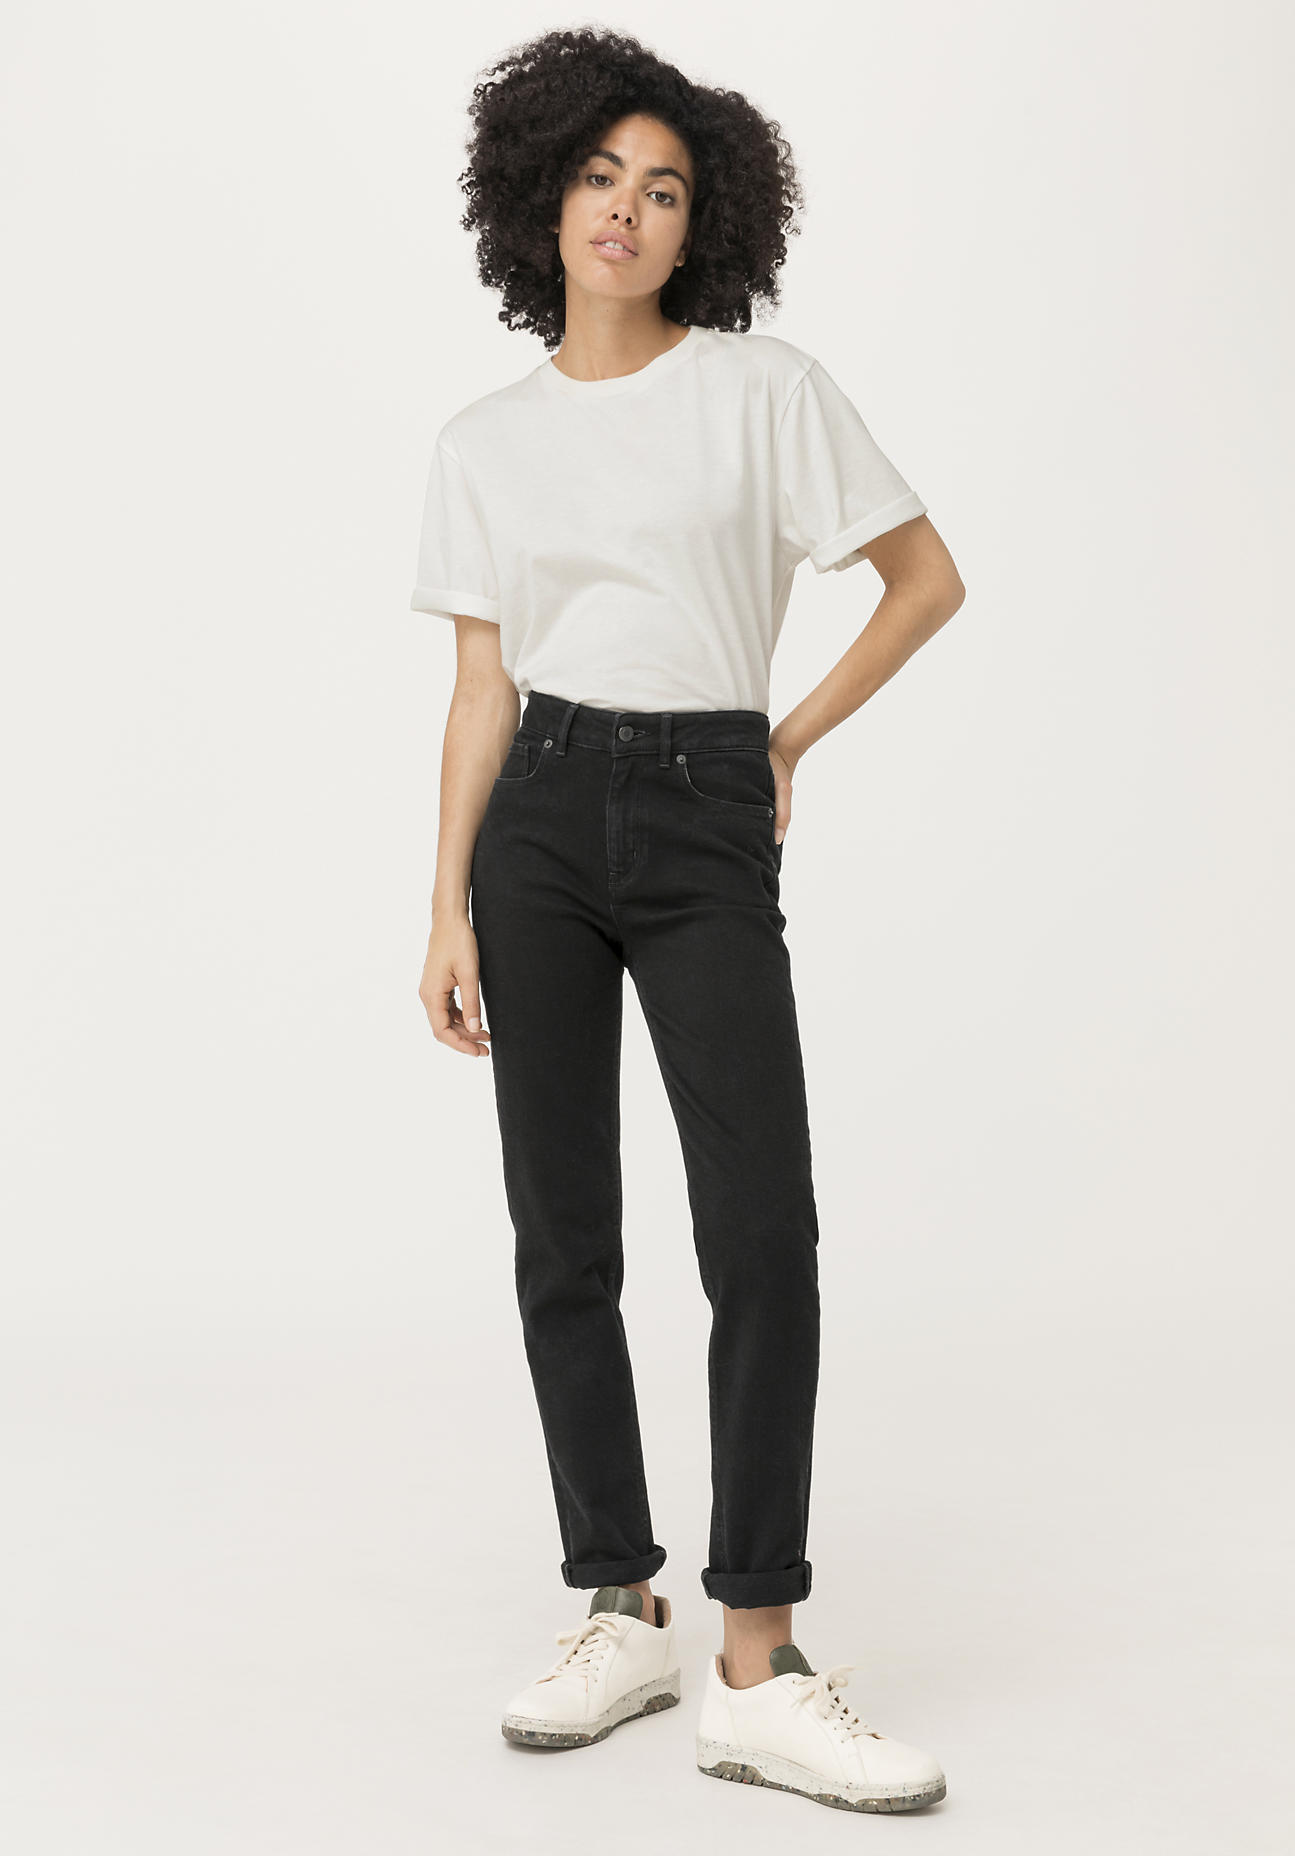 hessnatur Damen Jeans High Rise aus COREVA™ Bio-Denim - schwarz - Größe 29/32